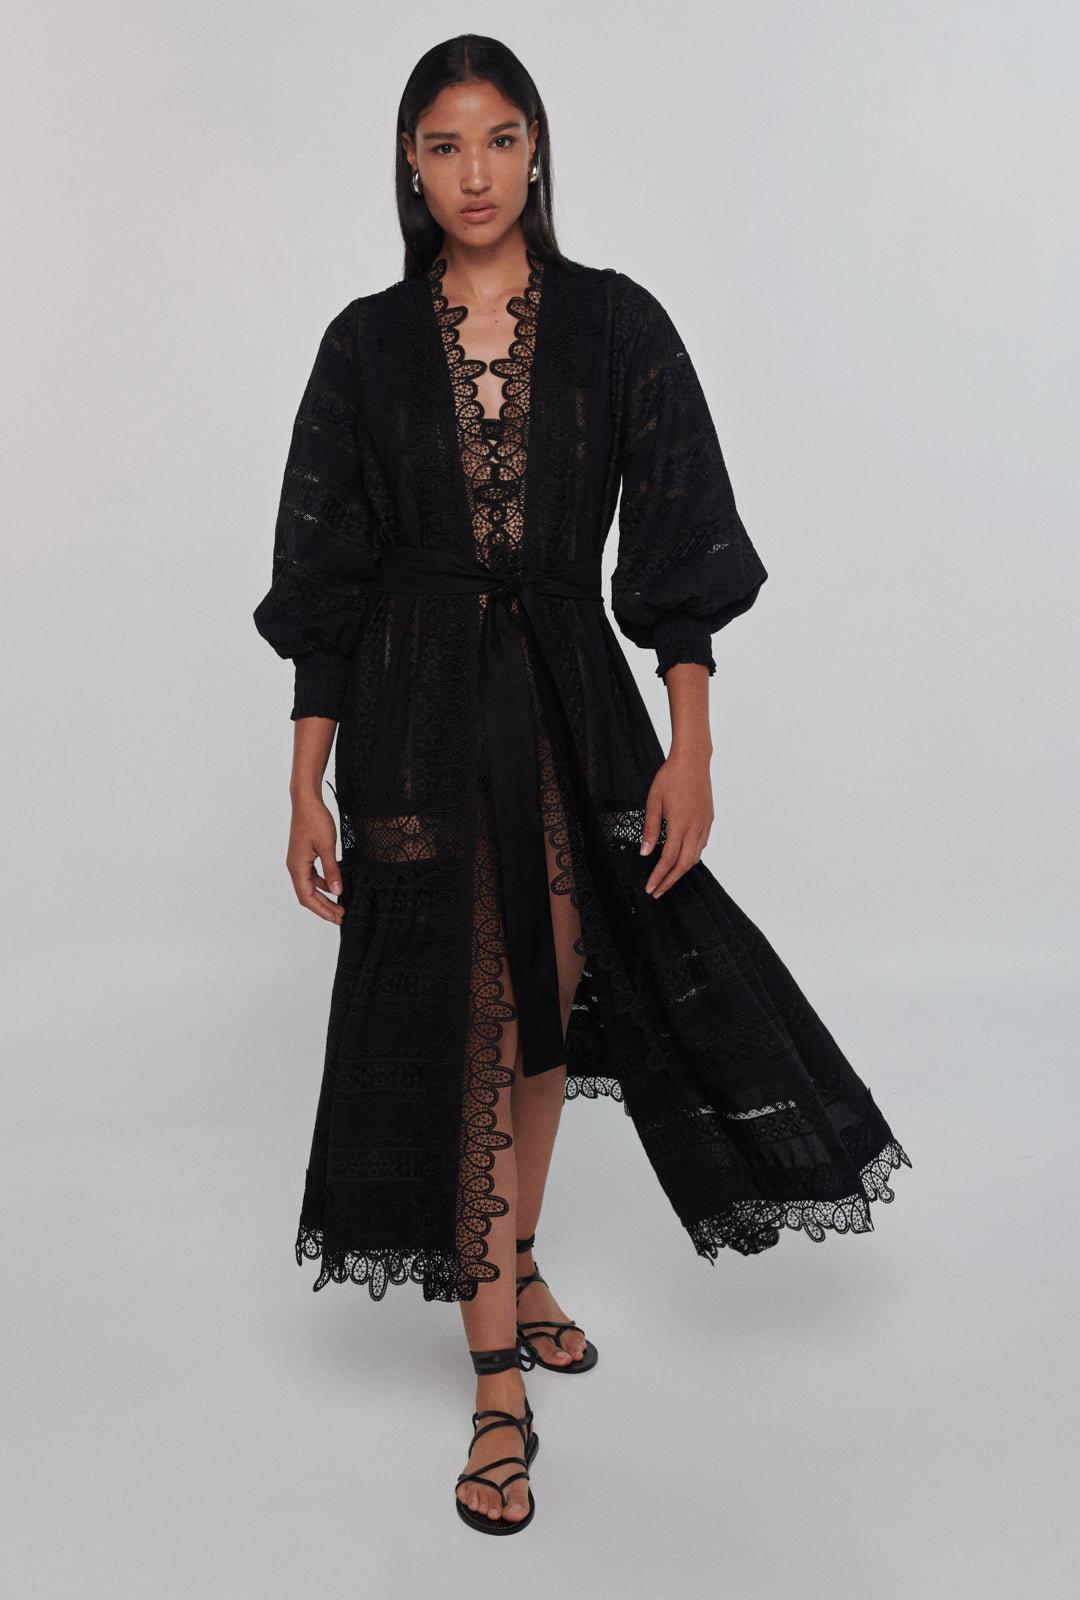 Waimari Chia Kimono - Premium Kimono from Marina St Barth - Just $450! Shop now at Marina St Barth